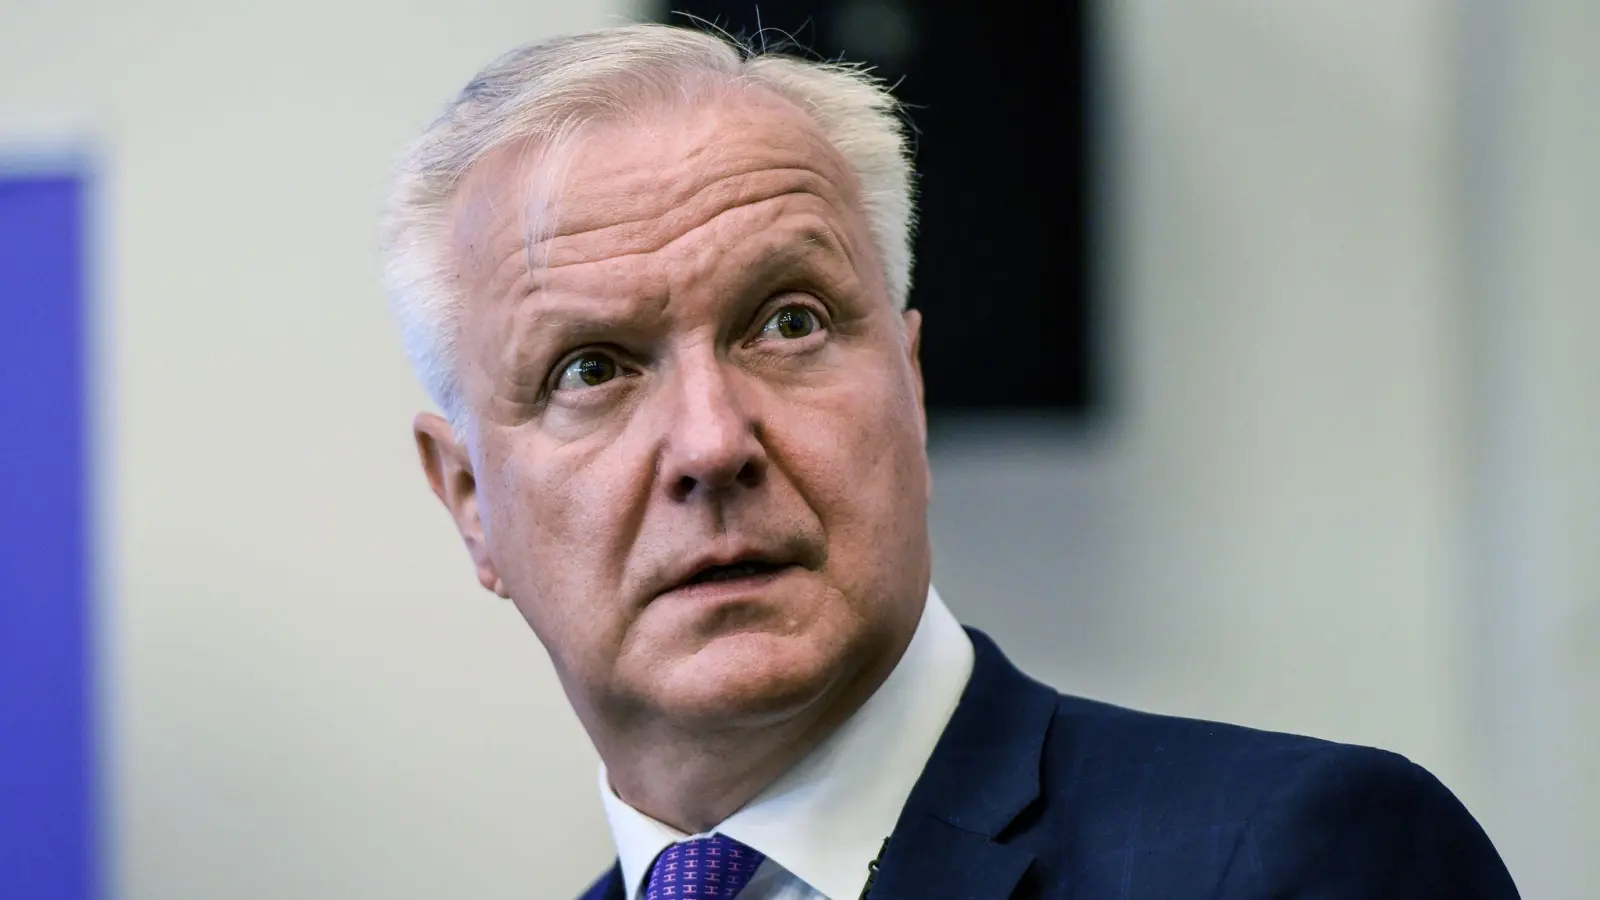 Rehn, Ratsmitglied der Europäischen Zentralbank, erinnert im Kampf gegen die Inflation an Durchhaltevermögen und Hartnäckigkeit. (Foto: Emmi Korhonen/Lehtikuva/dpa)